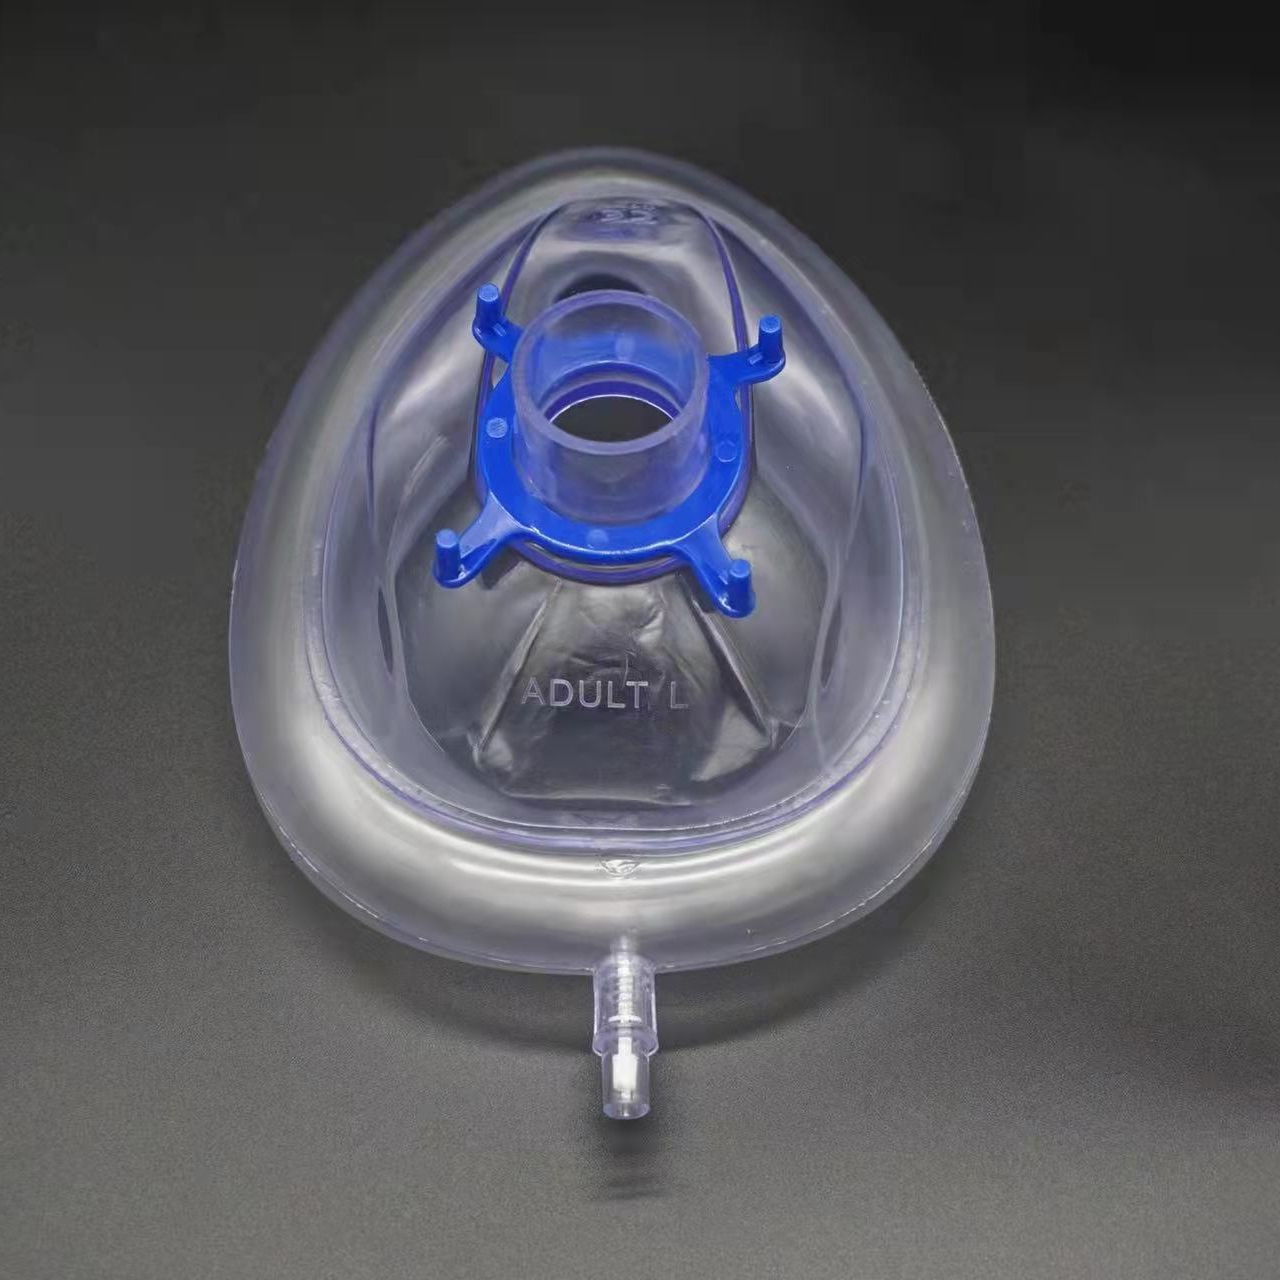 100 ភាគរយវេជ្ជសាស្ត្រថ្នាក់ទី PVC គ្មានជាតិពុល ប្រណិតភាពផាសុកភាព របាំងថ្នាំសន្លប់ Latex Free Air Cushion Anesthesia Mask